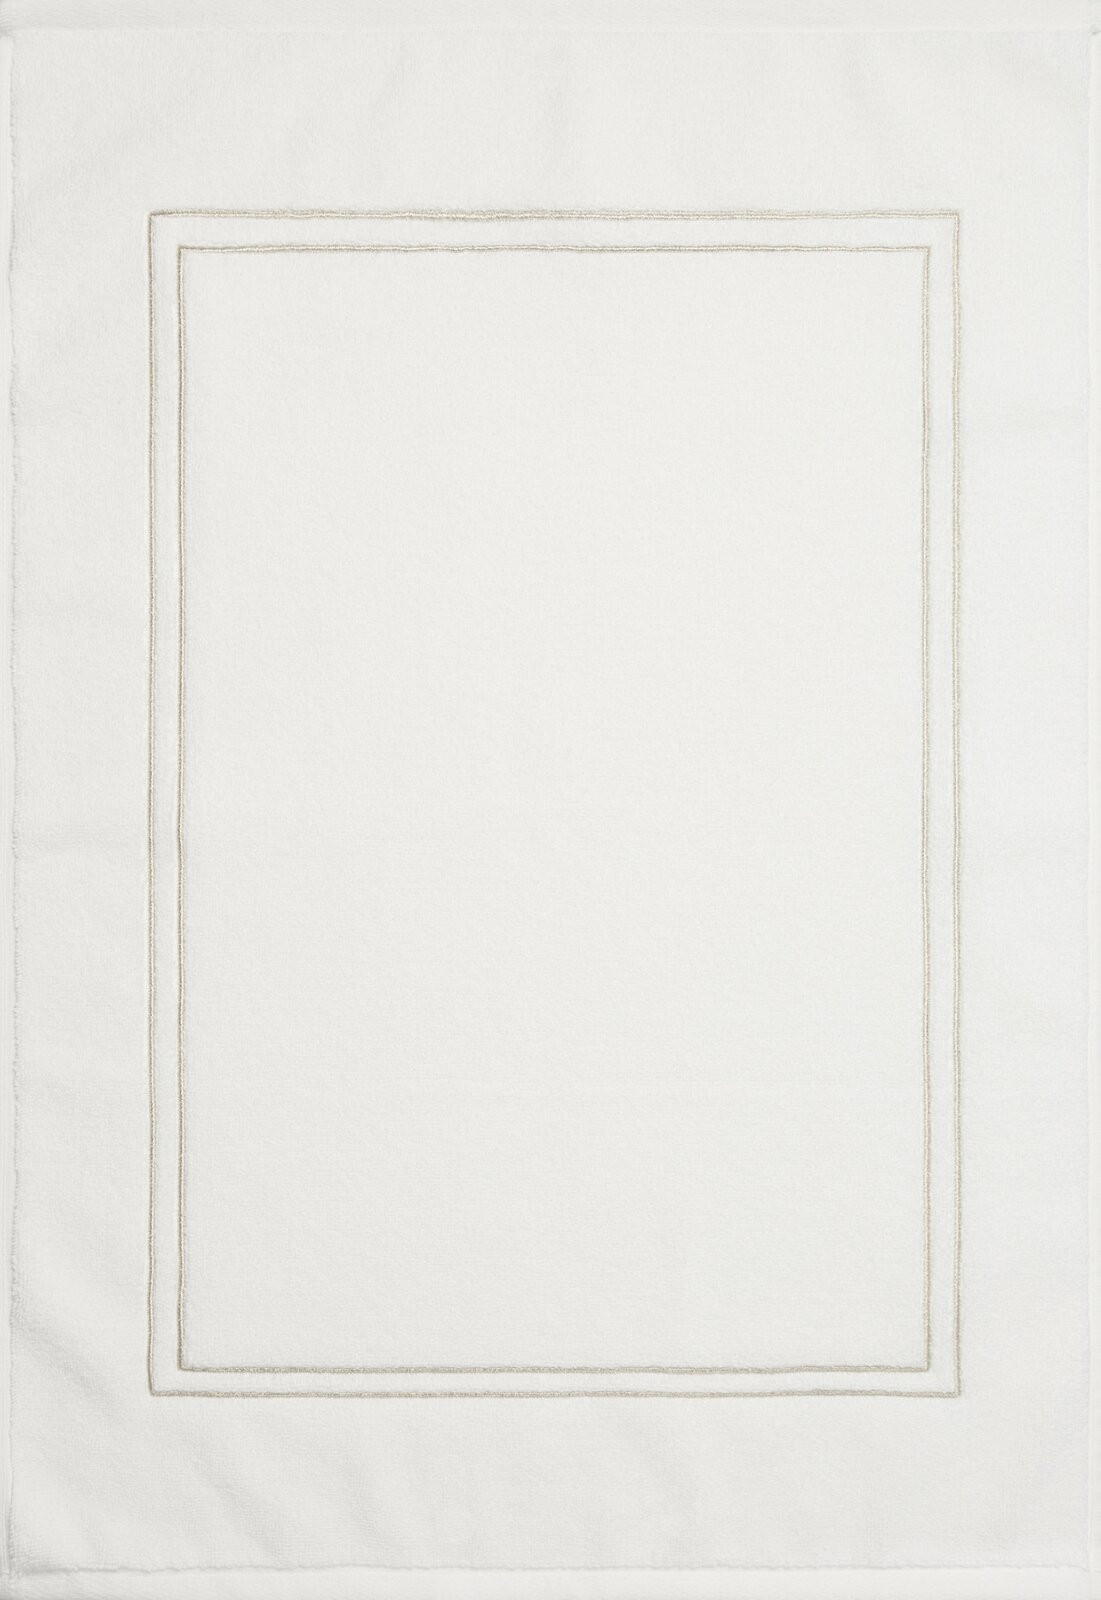 Koupelnový kobereček OLIVIA 01 bílý